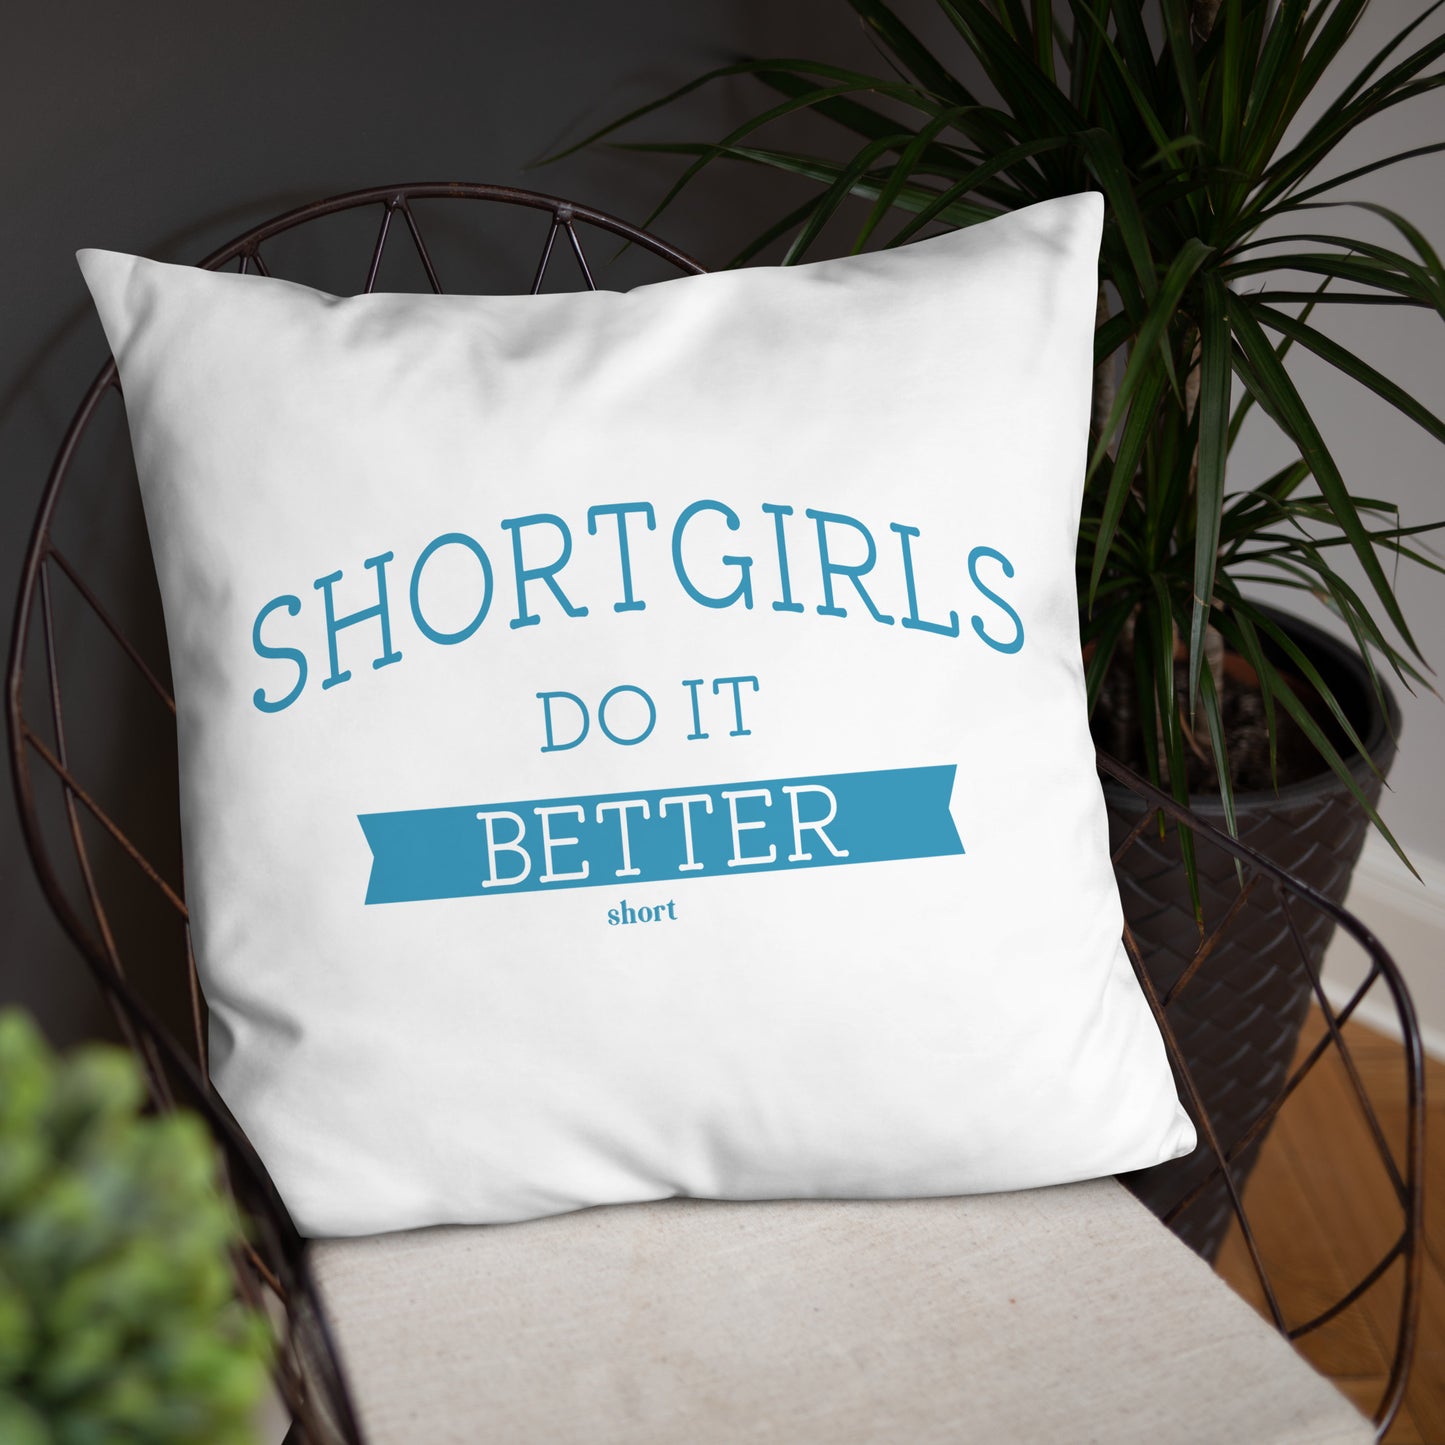 Basic Pillow - shortgirl do it better